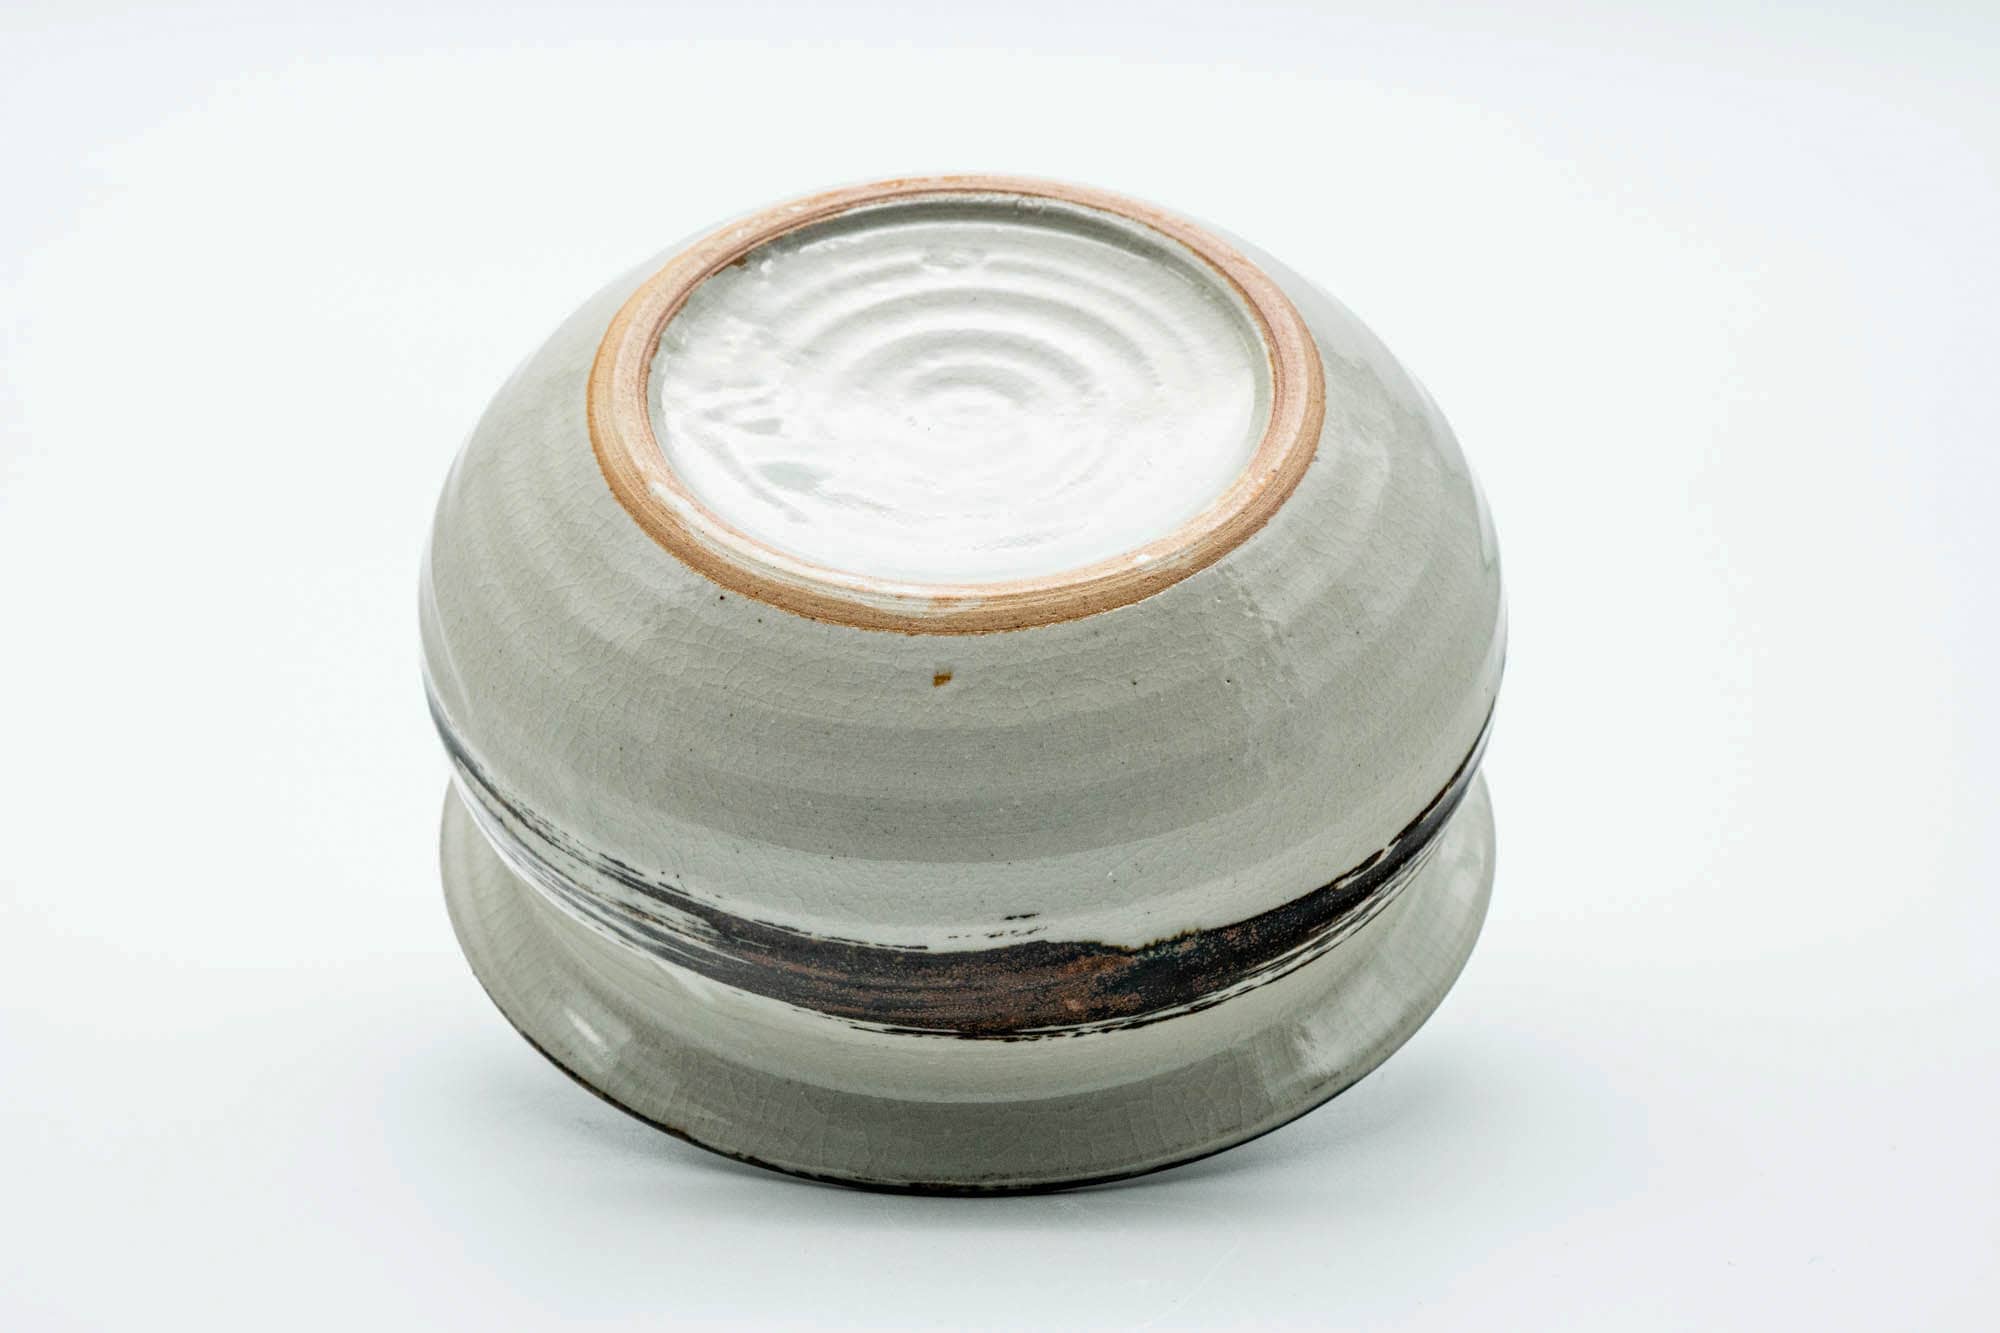 Japanese Kensui - White Brown Hakeme Glazed Water Bowl - 500ml